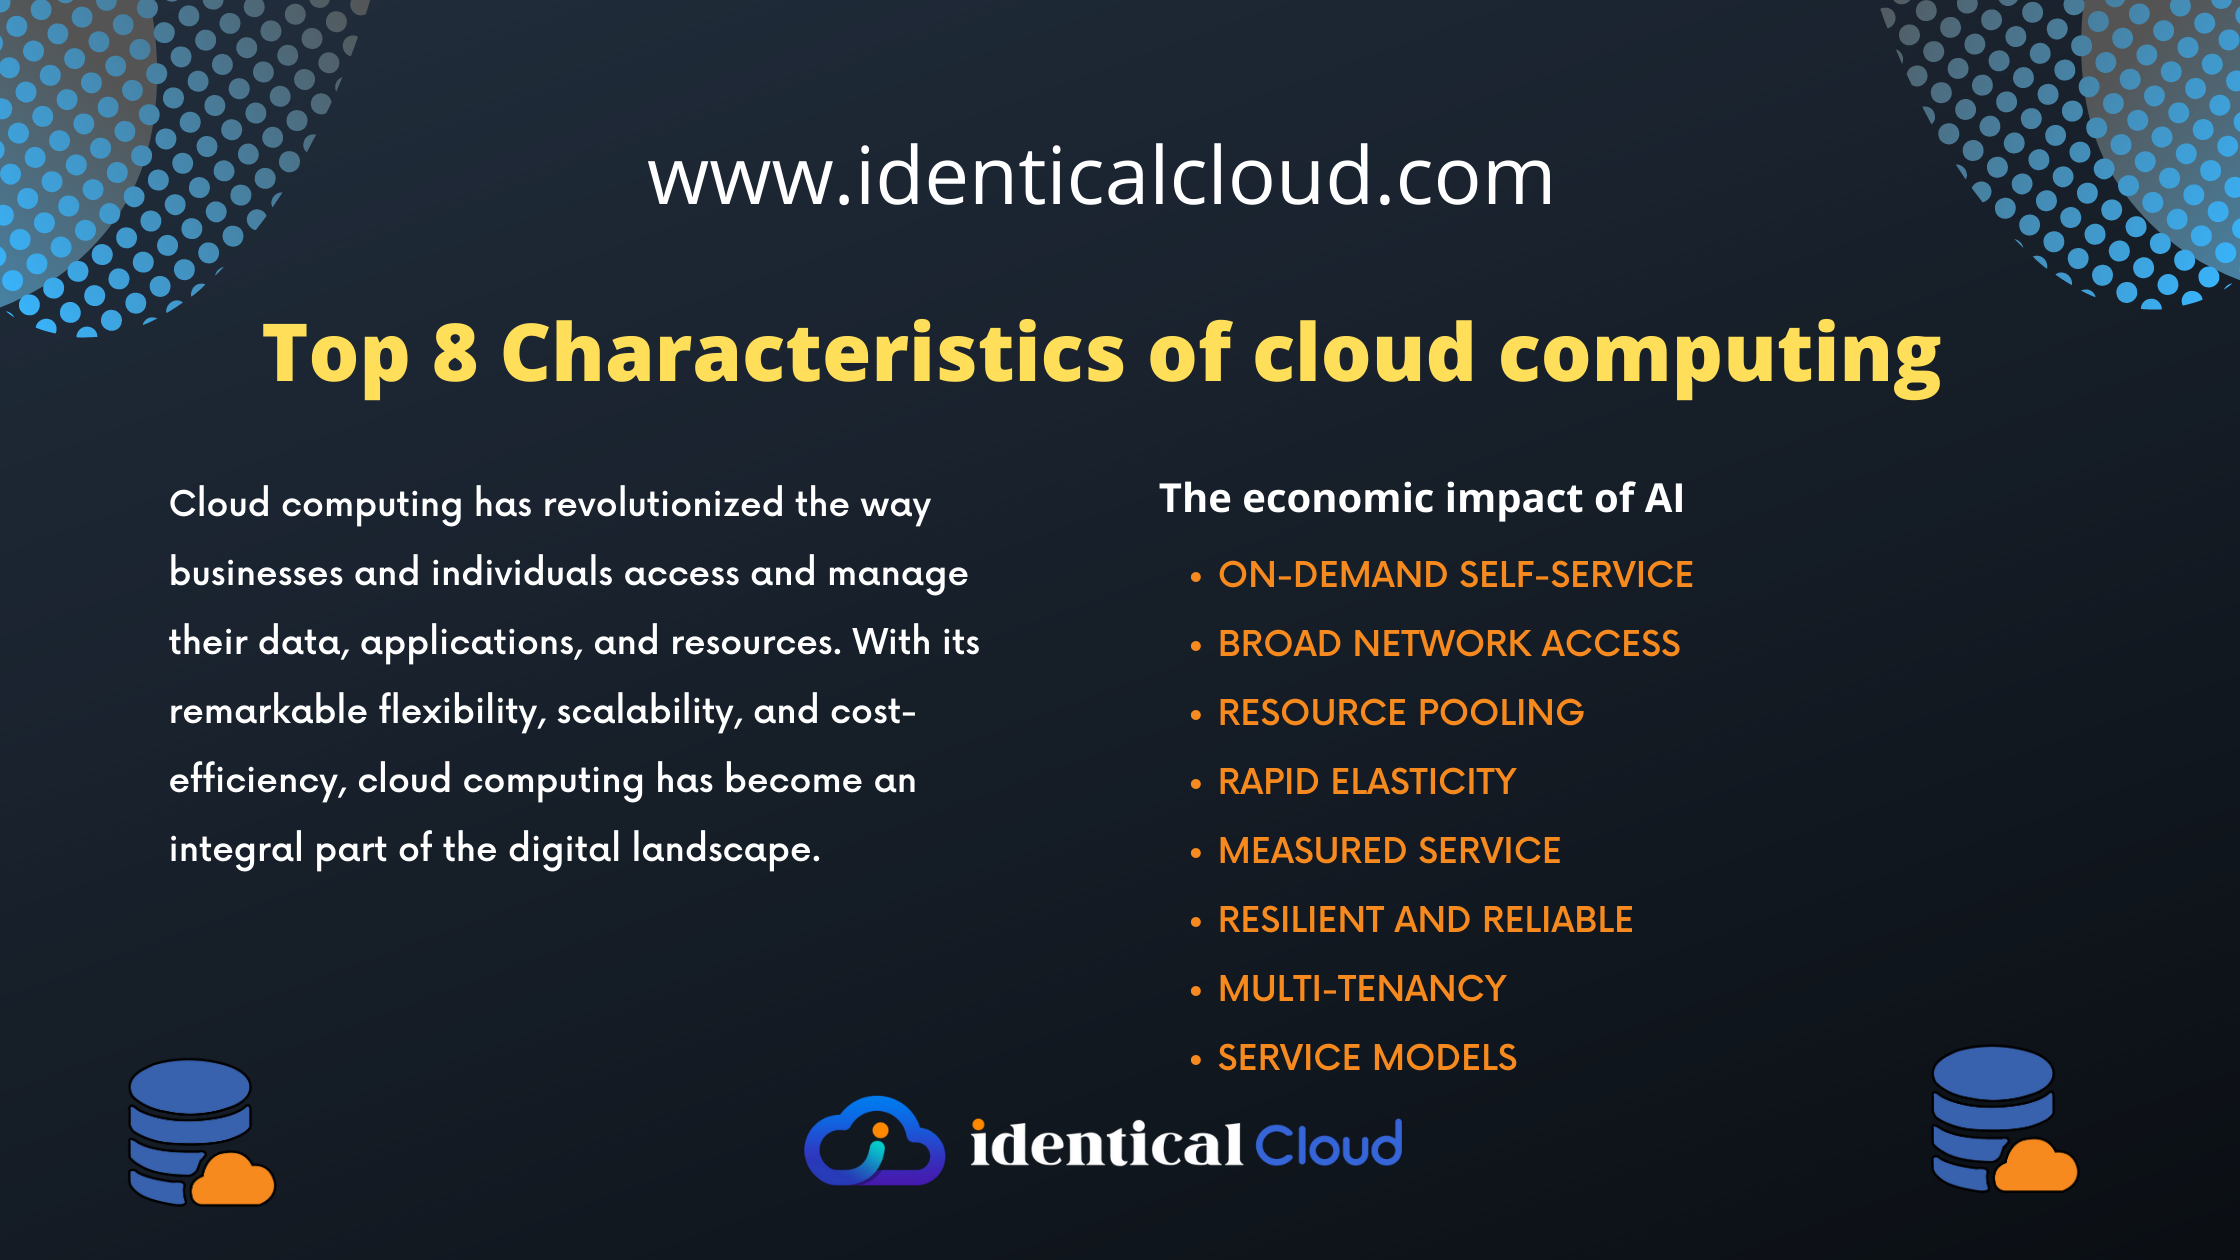 Top 8 Characteristics of cloud computing - identicalcloud.com